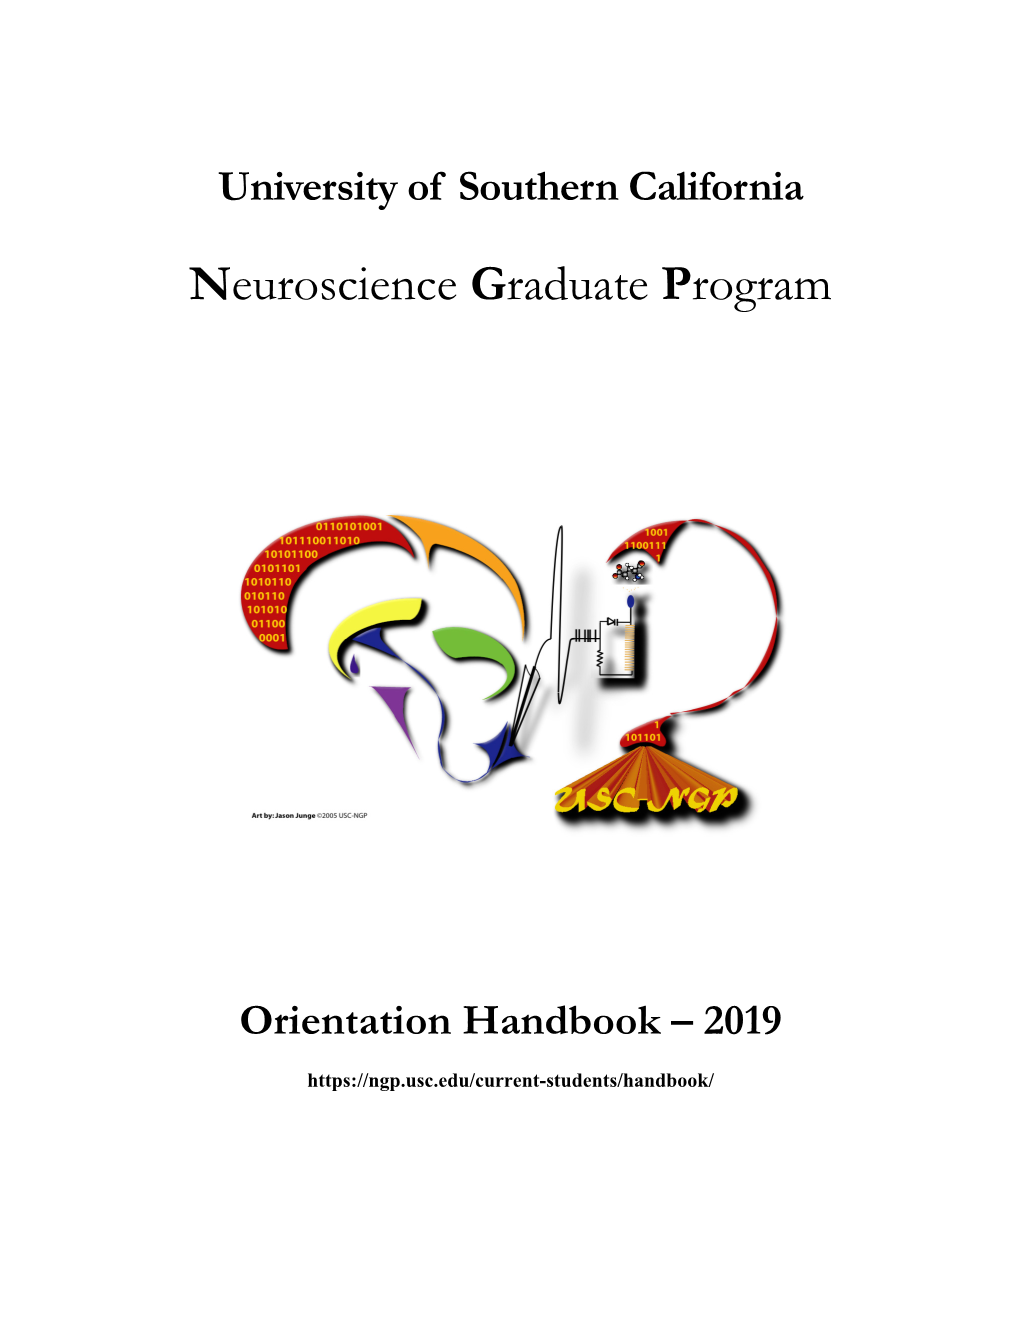 2019 Orientation Handbook